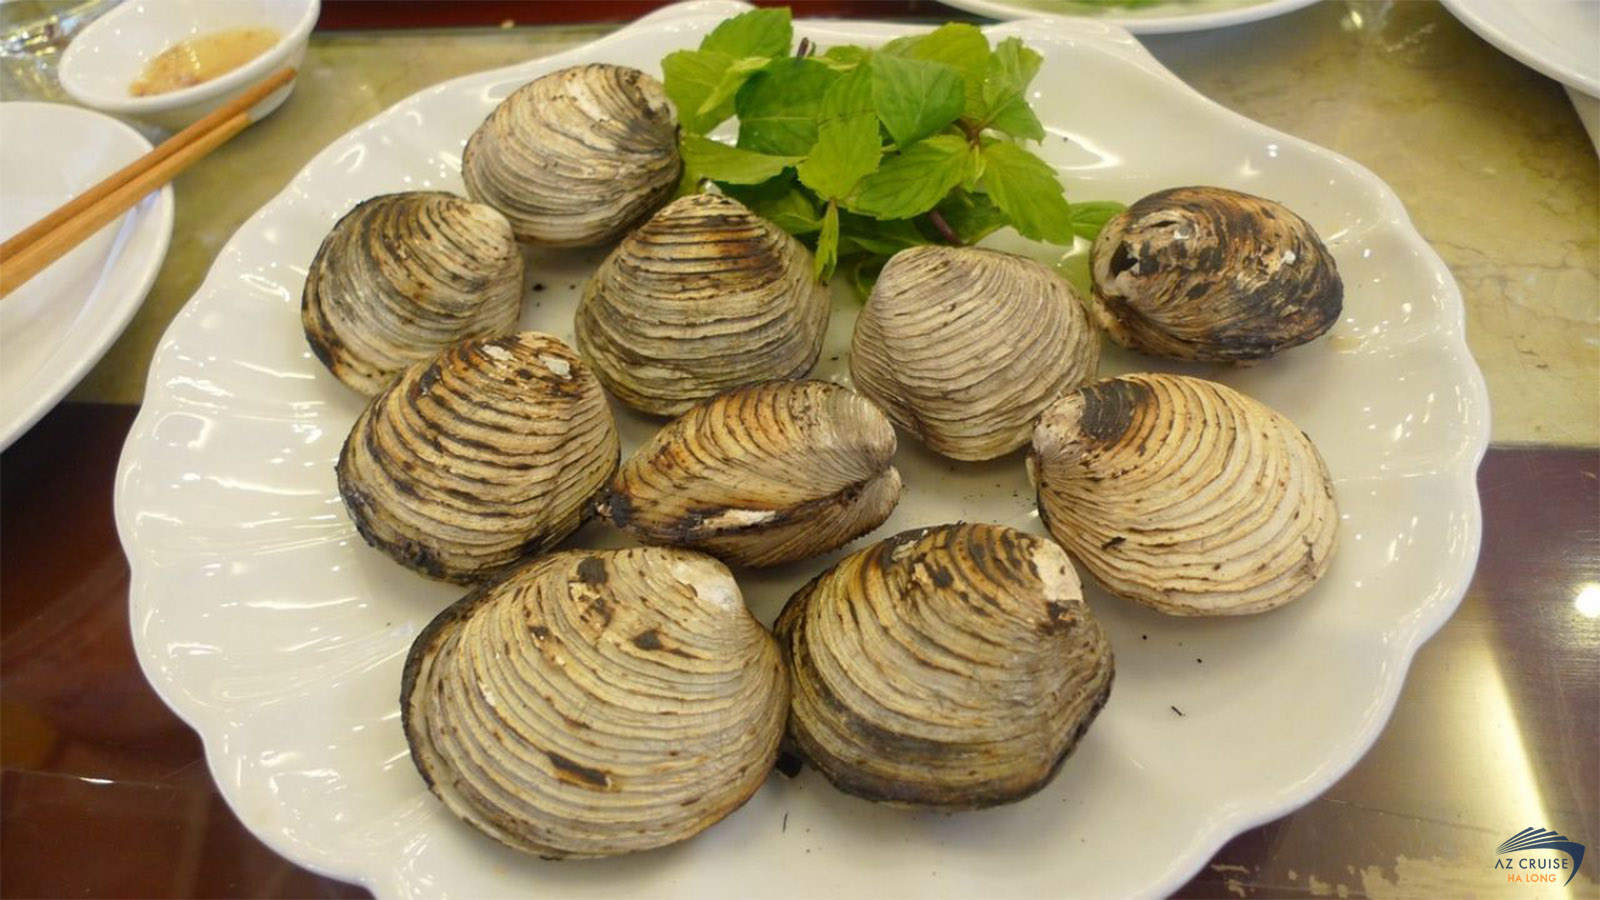 Ngán biển là loại đặc sản Quảng Ninh vị hương vị ngon 